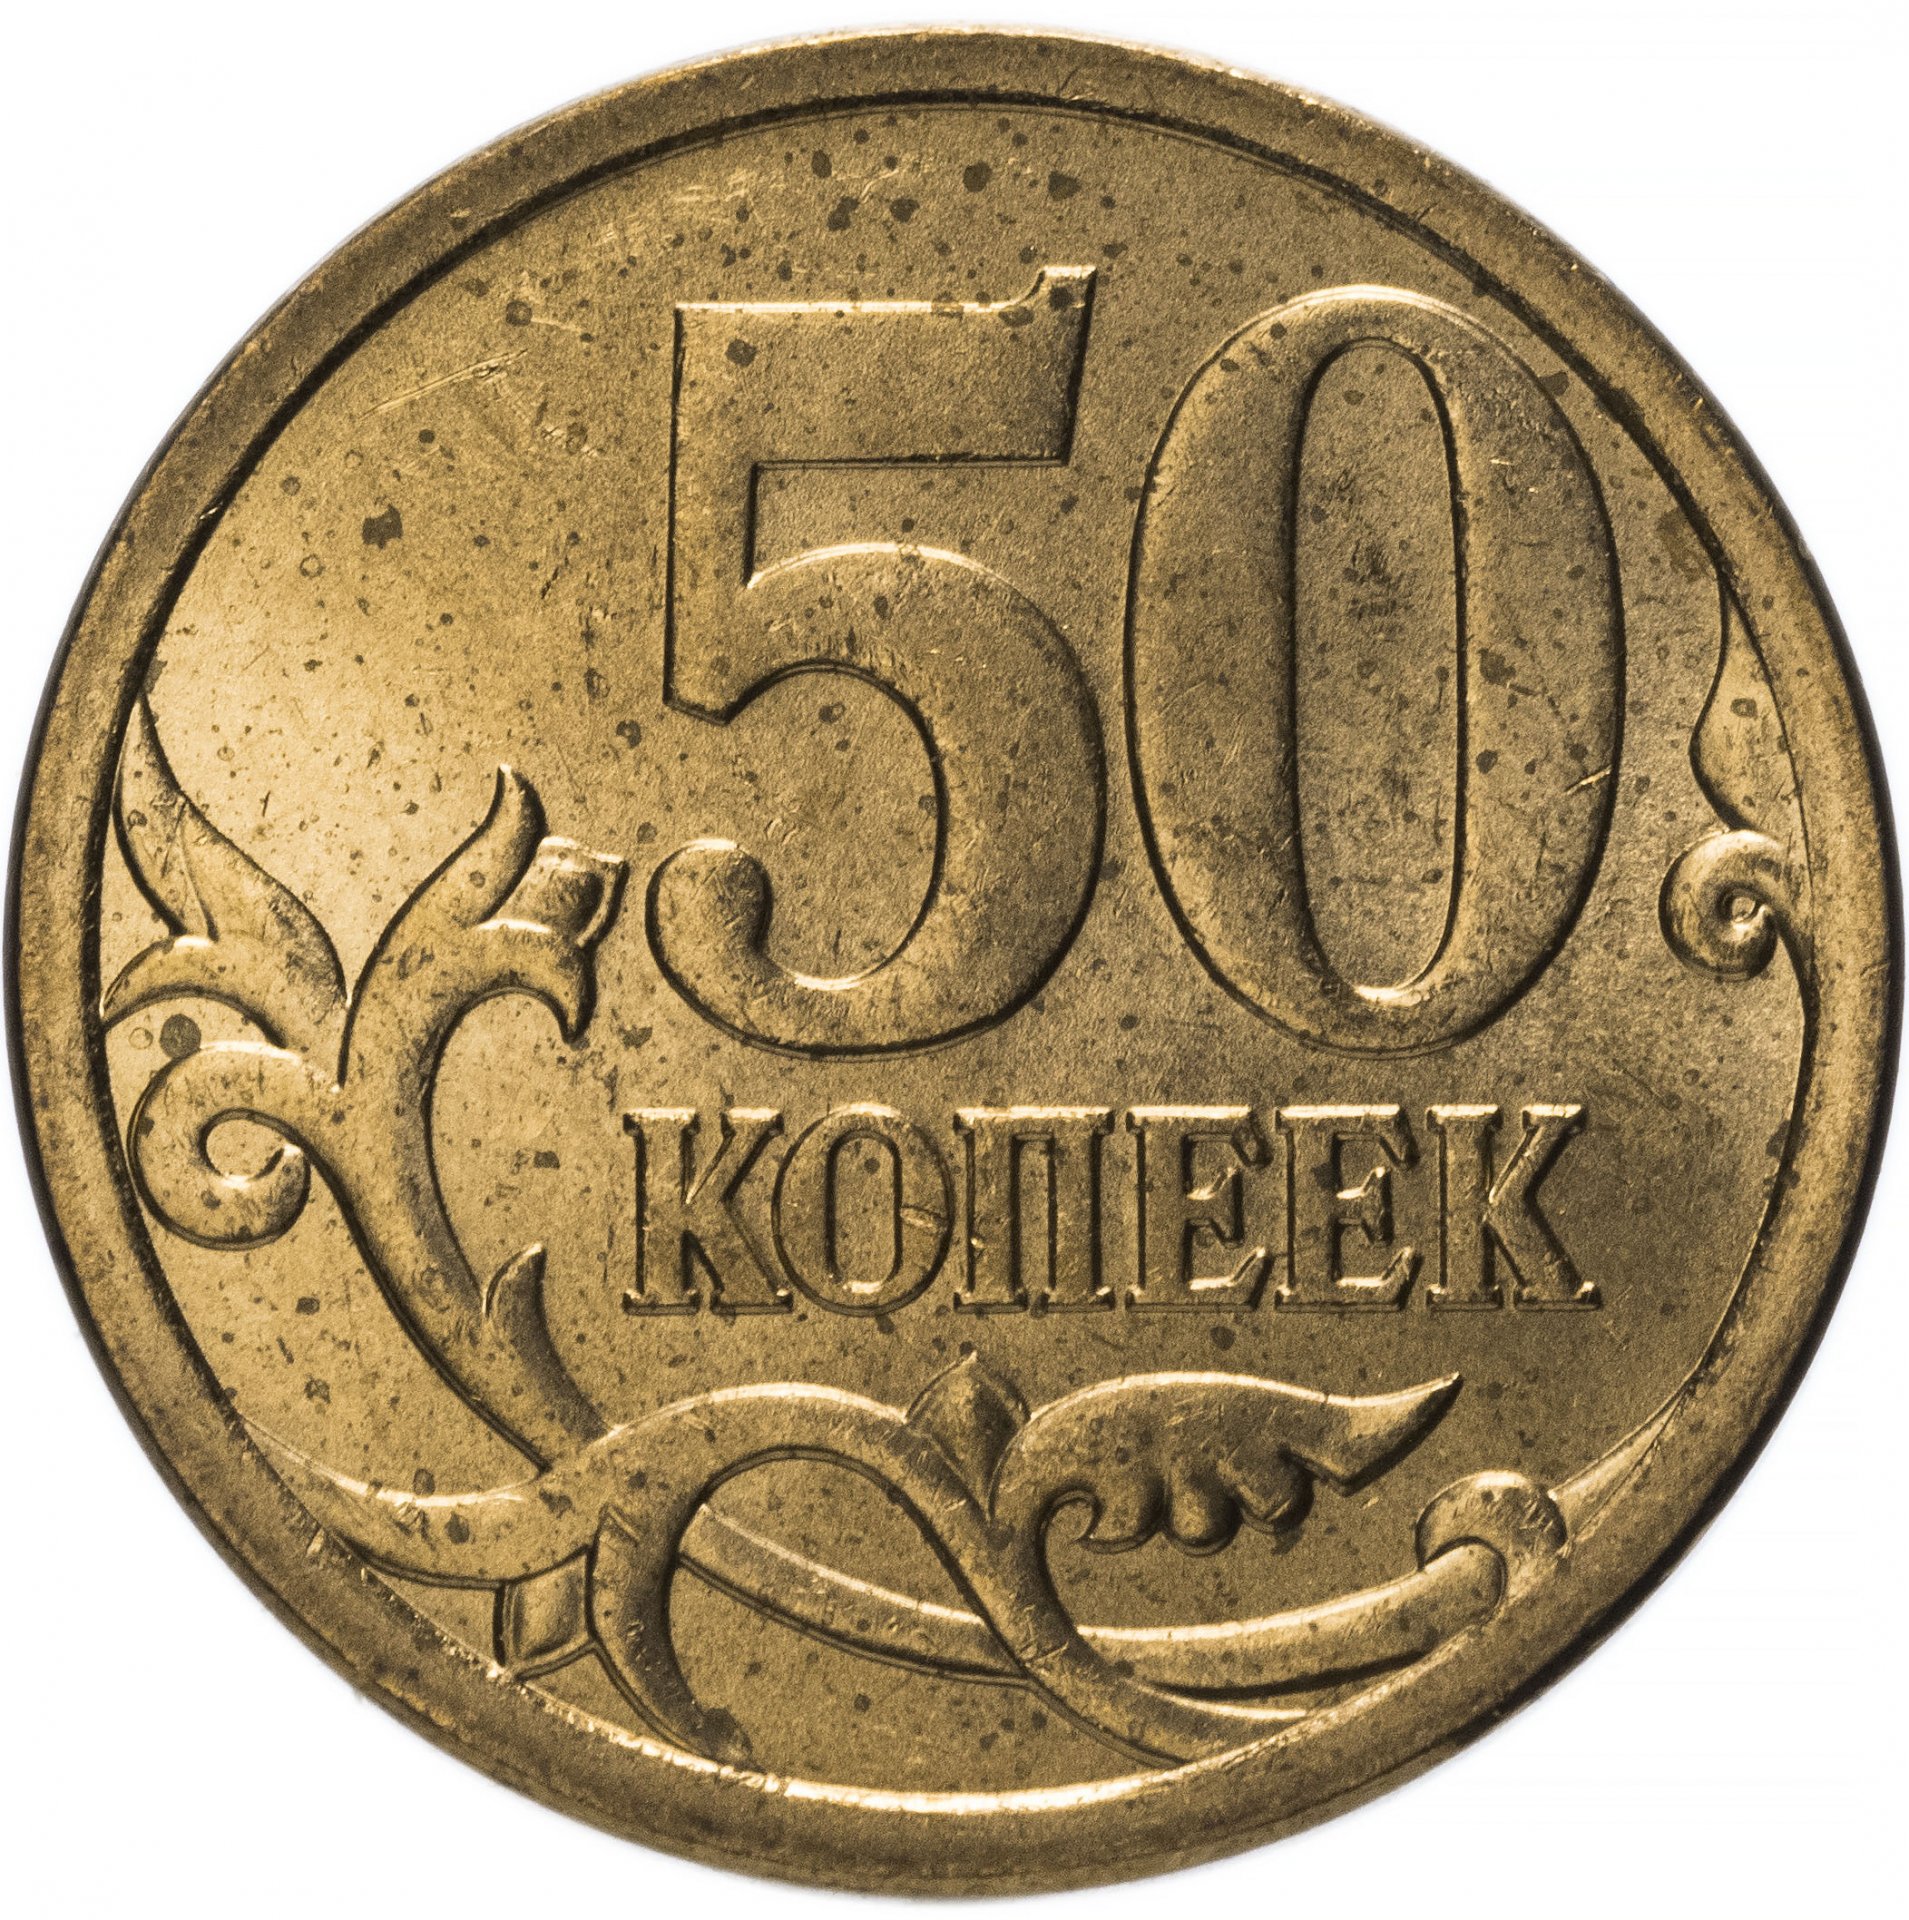 50 копеек 2008 года. 50 Тыйын 2008 Киргизия монета. Монеты Киргизии 50 тыйын. 50 Тыйын 2008 года Кыргызстан. 1 Тыйын 2008 Киргизия монета.